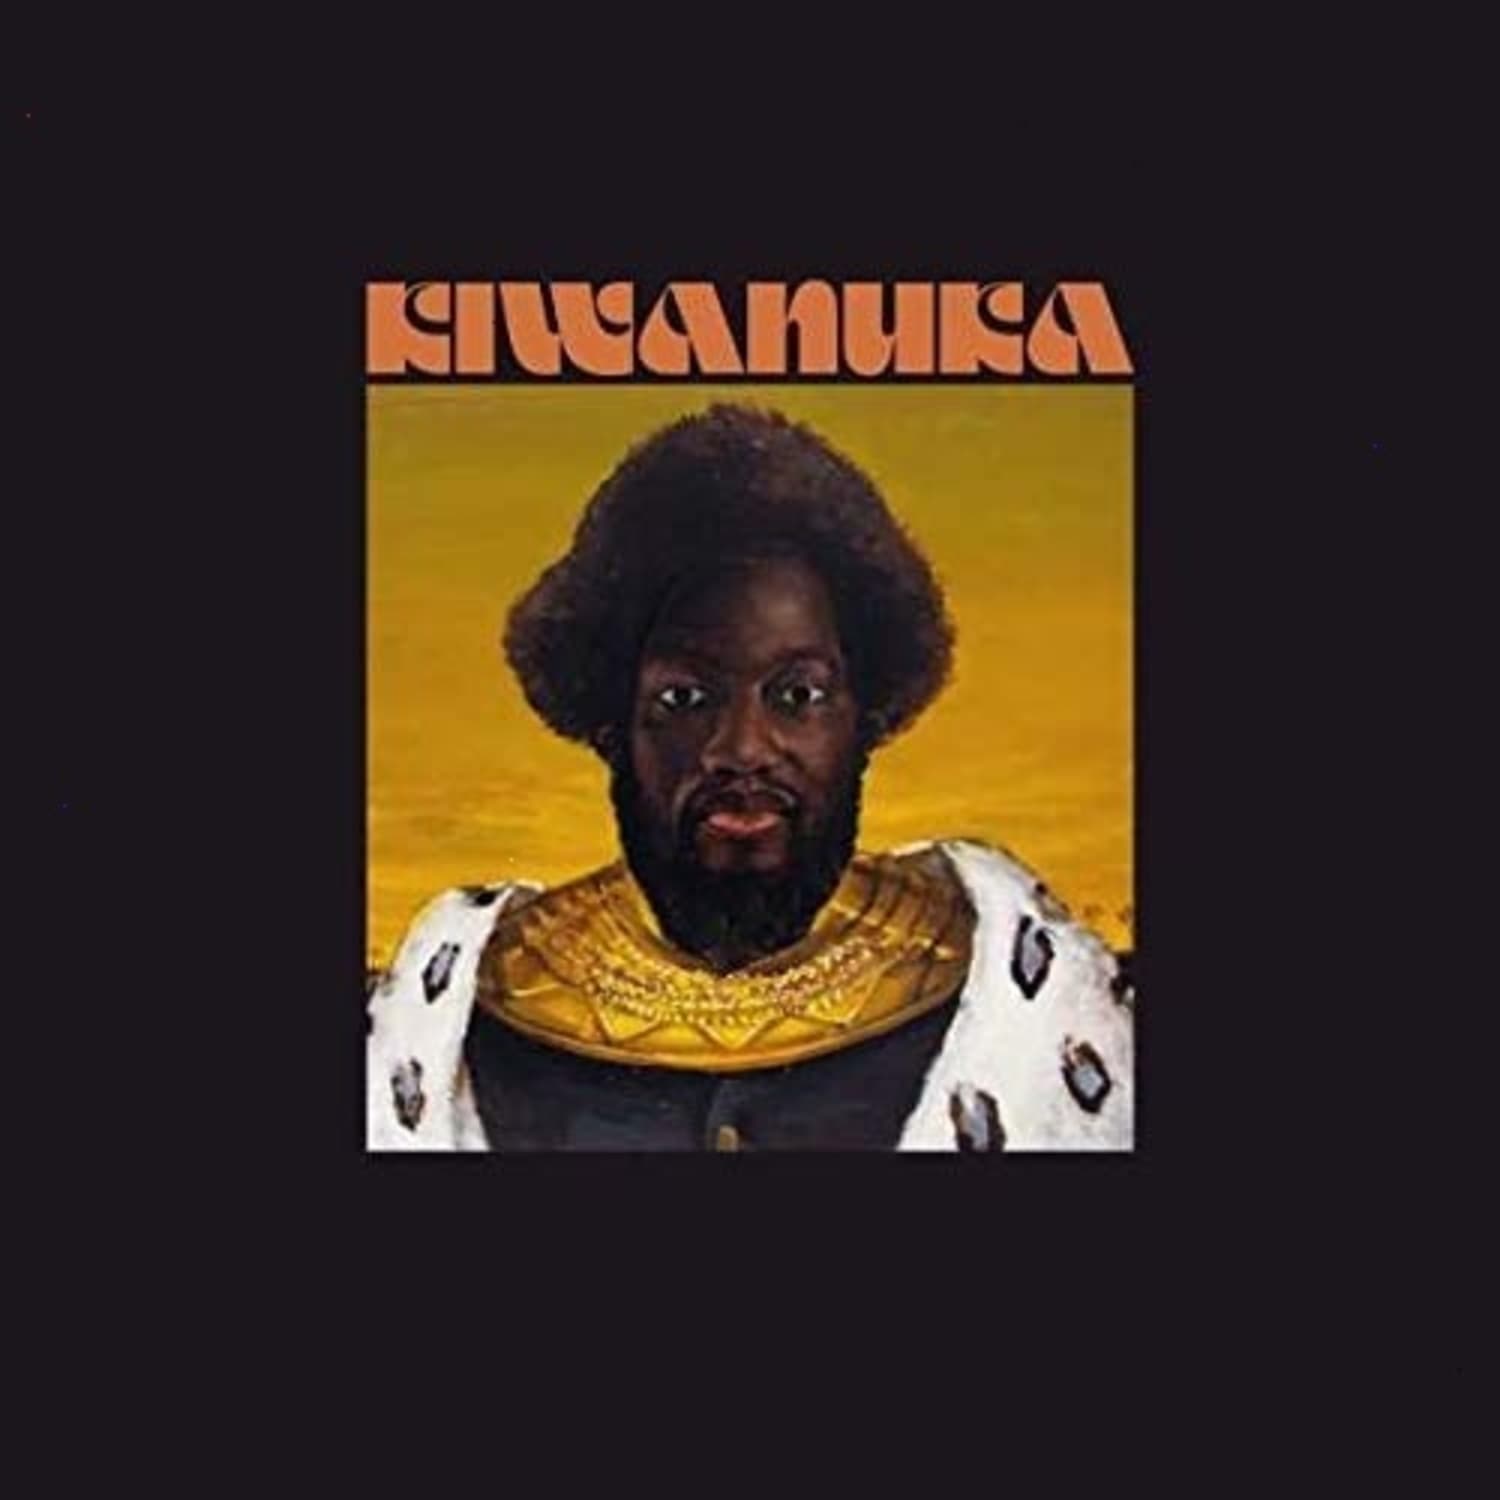 Michael Kiwanuka – KIWANUKA (Vinyl) on MovieShack